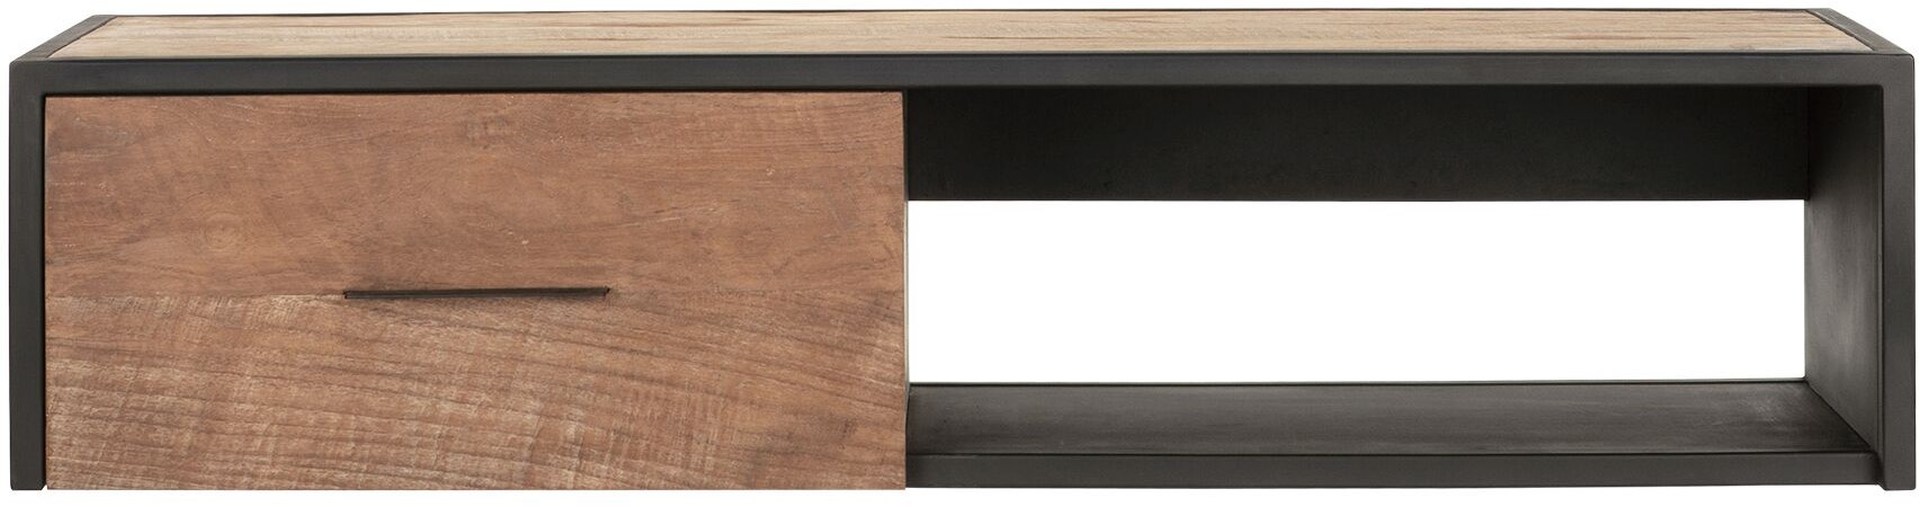 Das TV-Board Elemental überzeugt mit seinem modernem Design. Gefertigt wurde es aus Teakholz, welches einen natürlichen Farbton besitzt. Das Board verfügt über eine Schublade und ein offenes Fach. Es besitzt eine Breite von 110 cm.